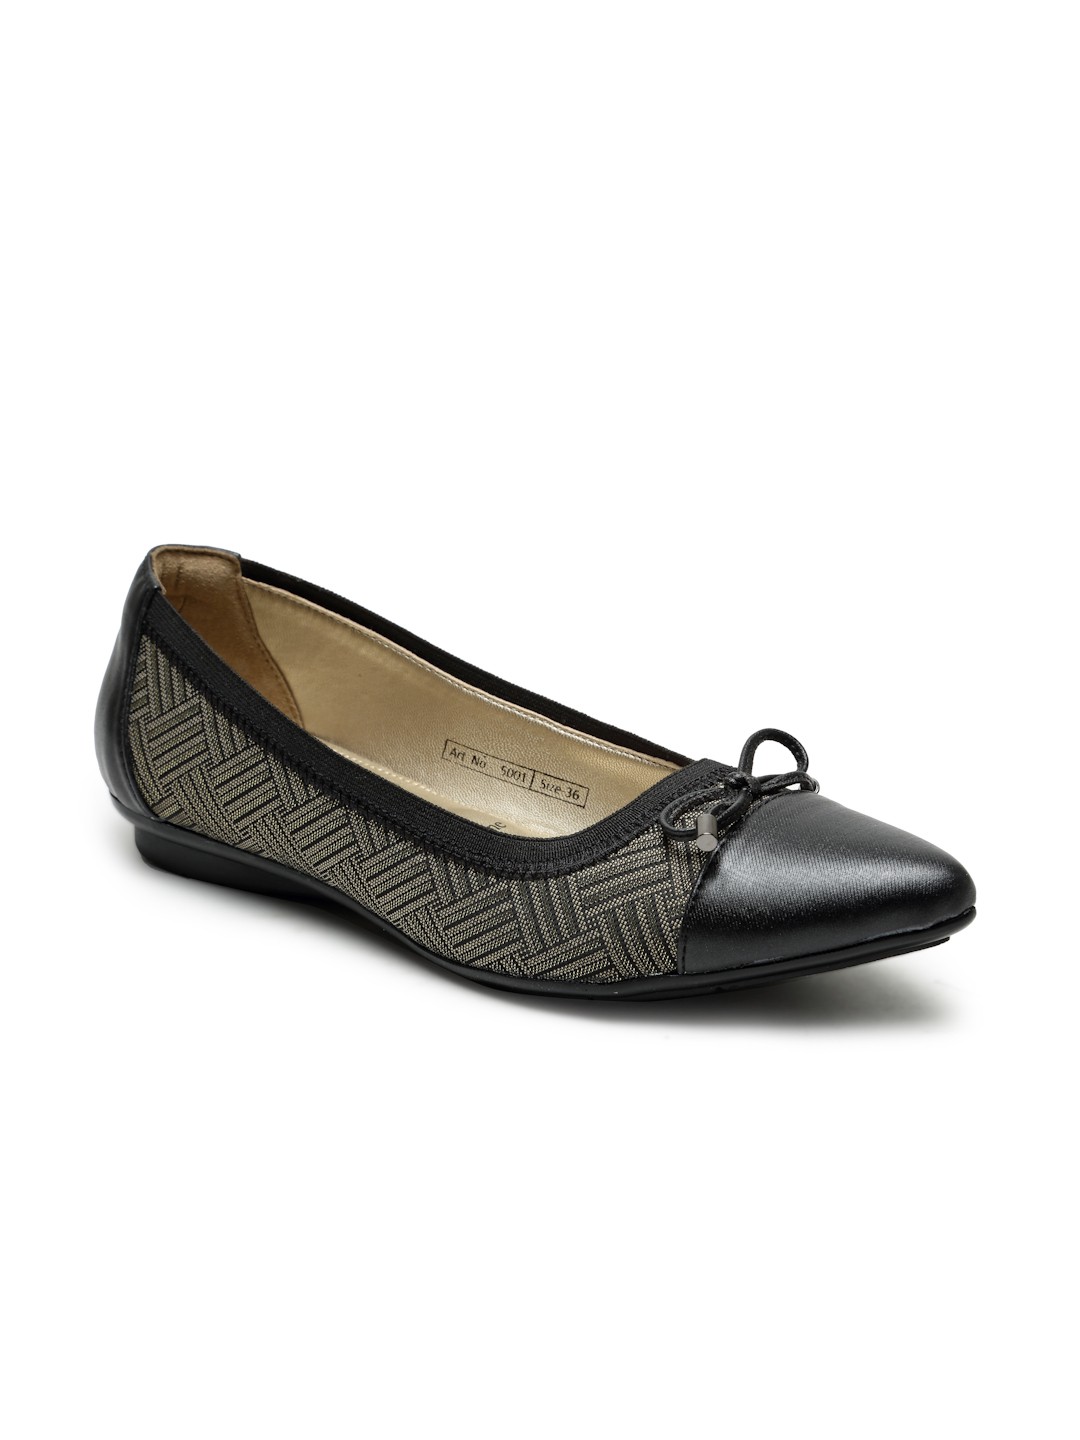 Buy VON WELLX GERMANY comfort women's Black casual shoes LISA In Delhi